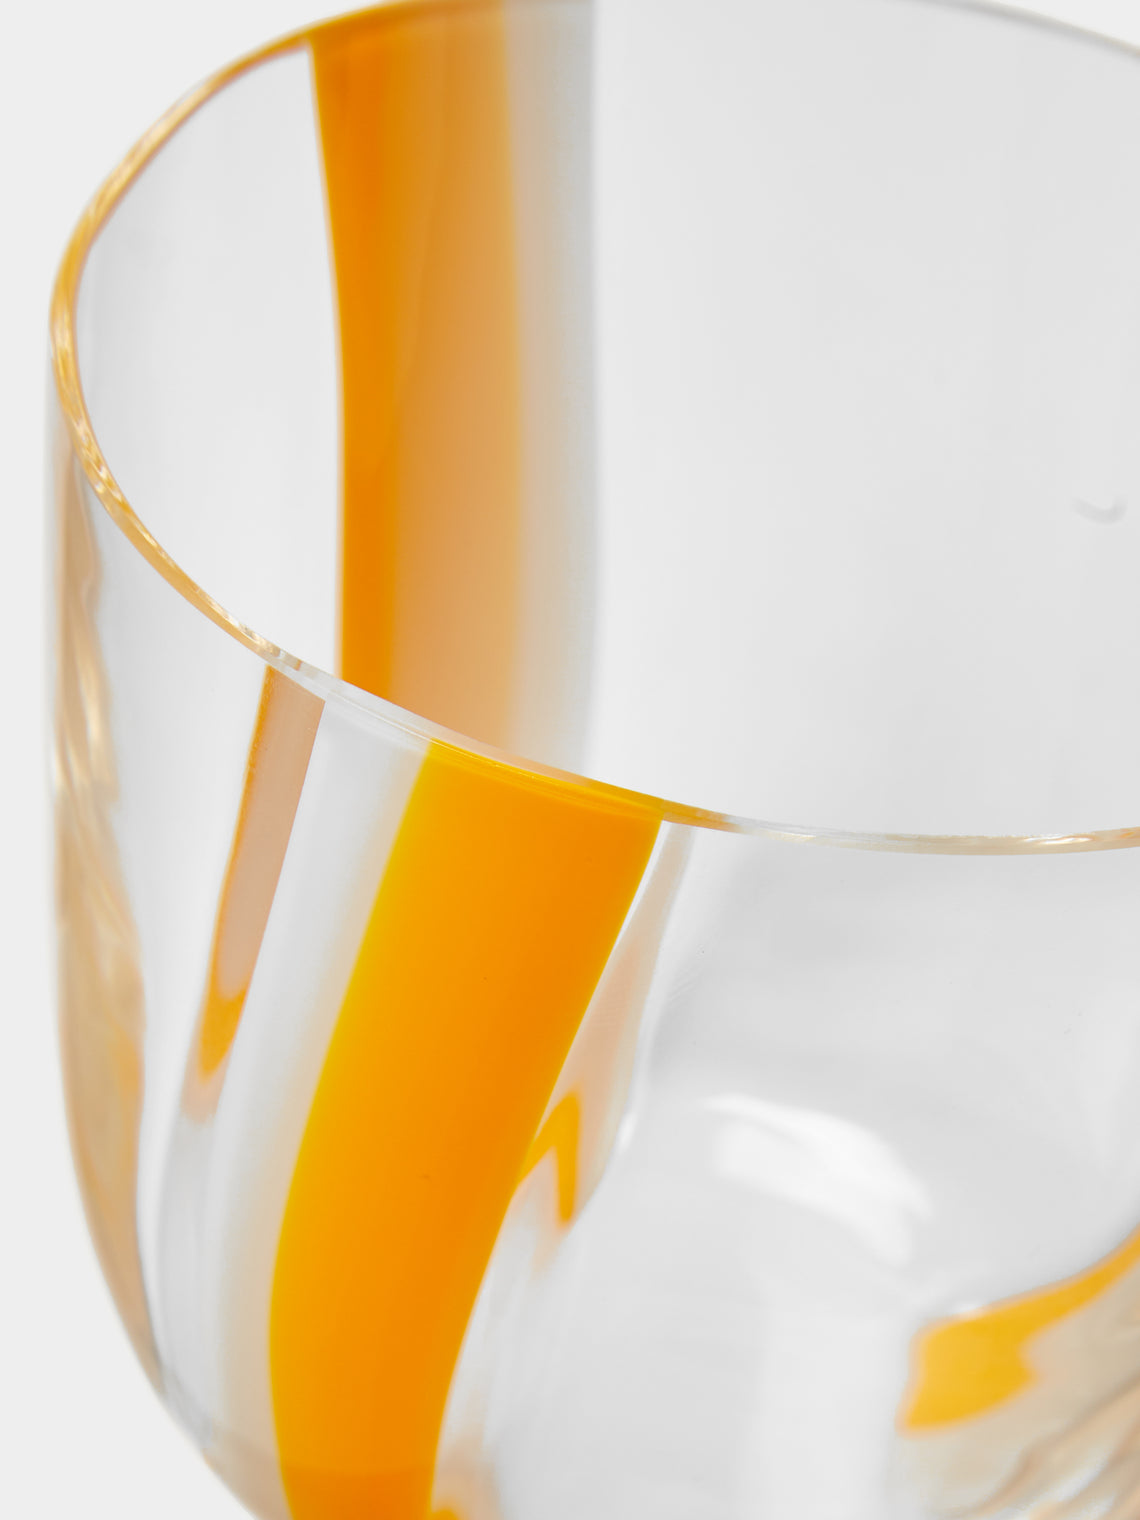 Carlo Moretti - I Diversi Hand-Blown Murano Glass Tumbler -  - ABASK